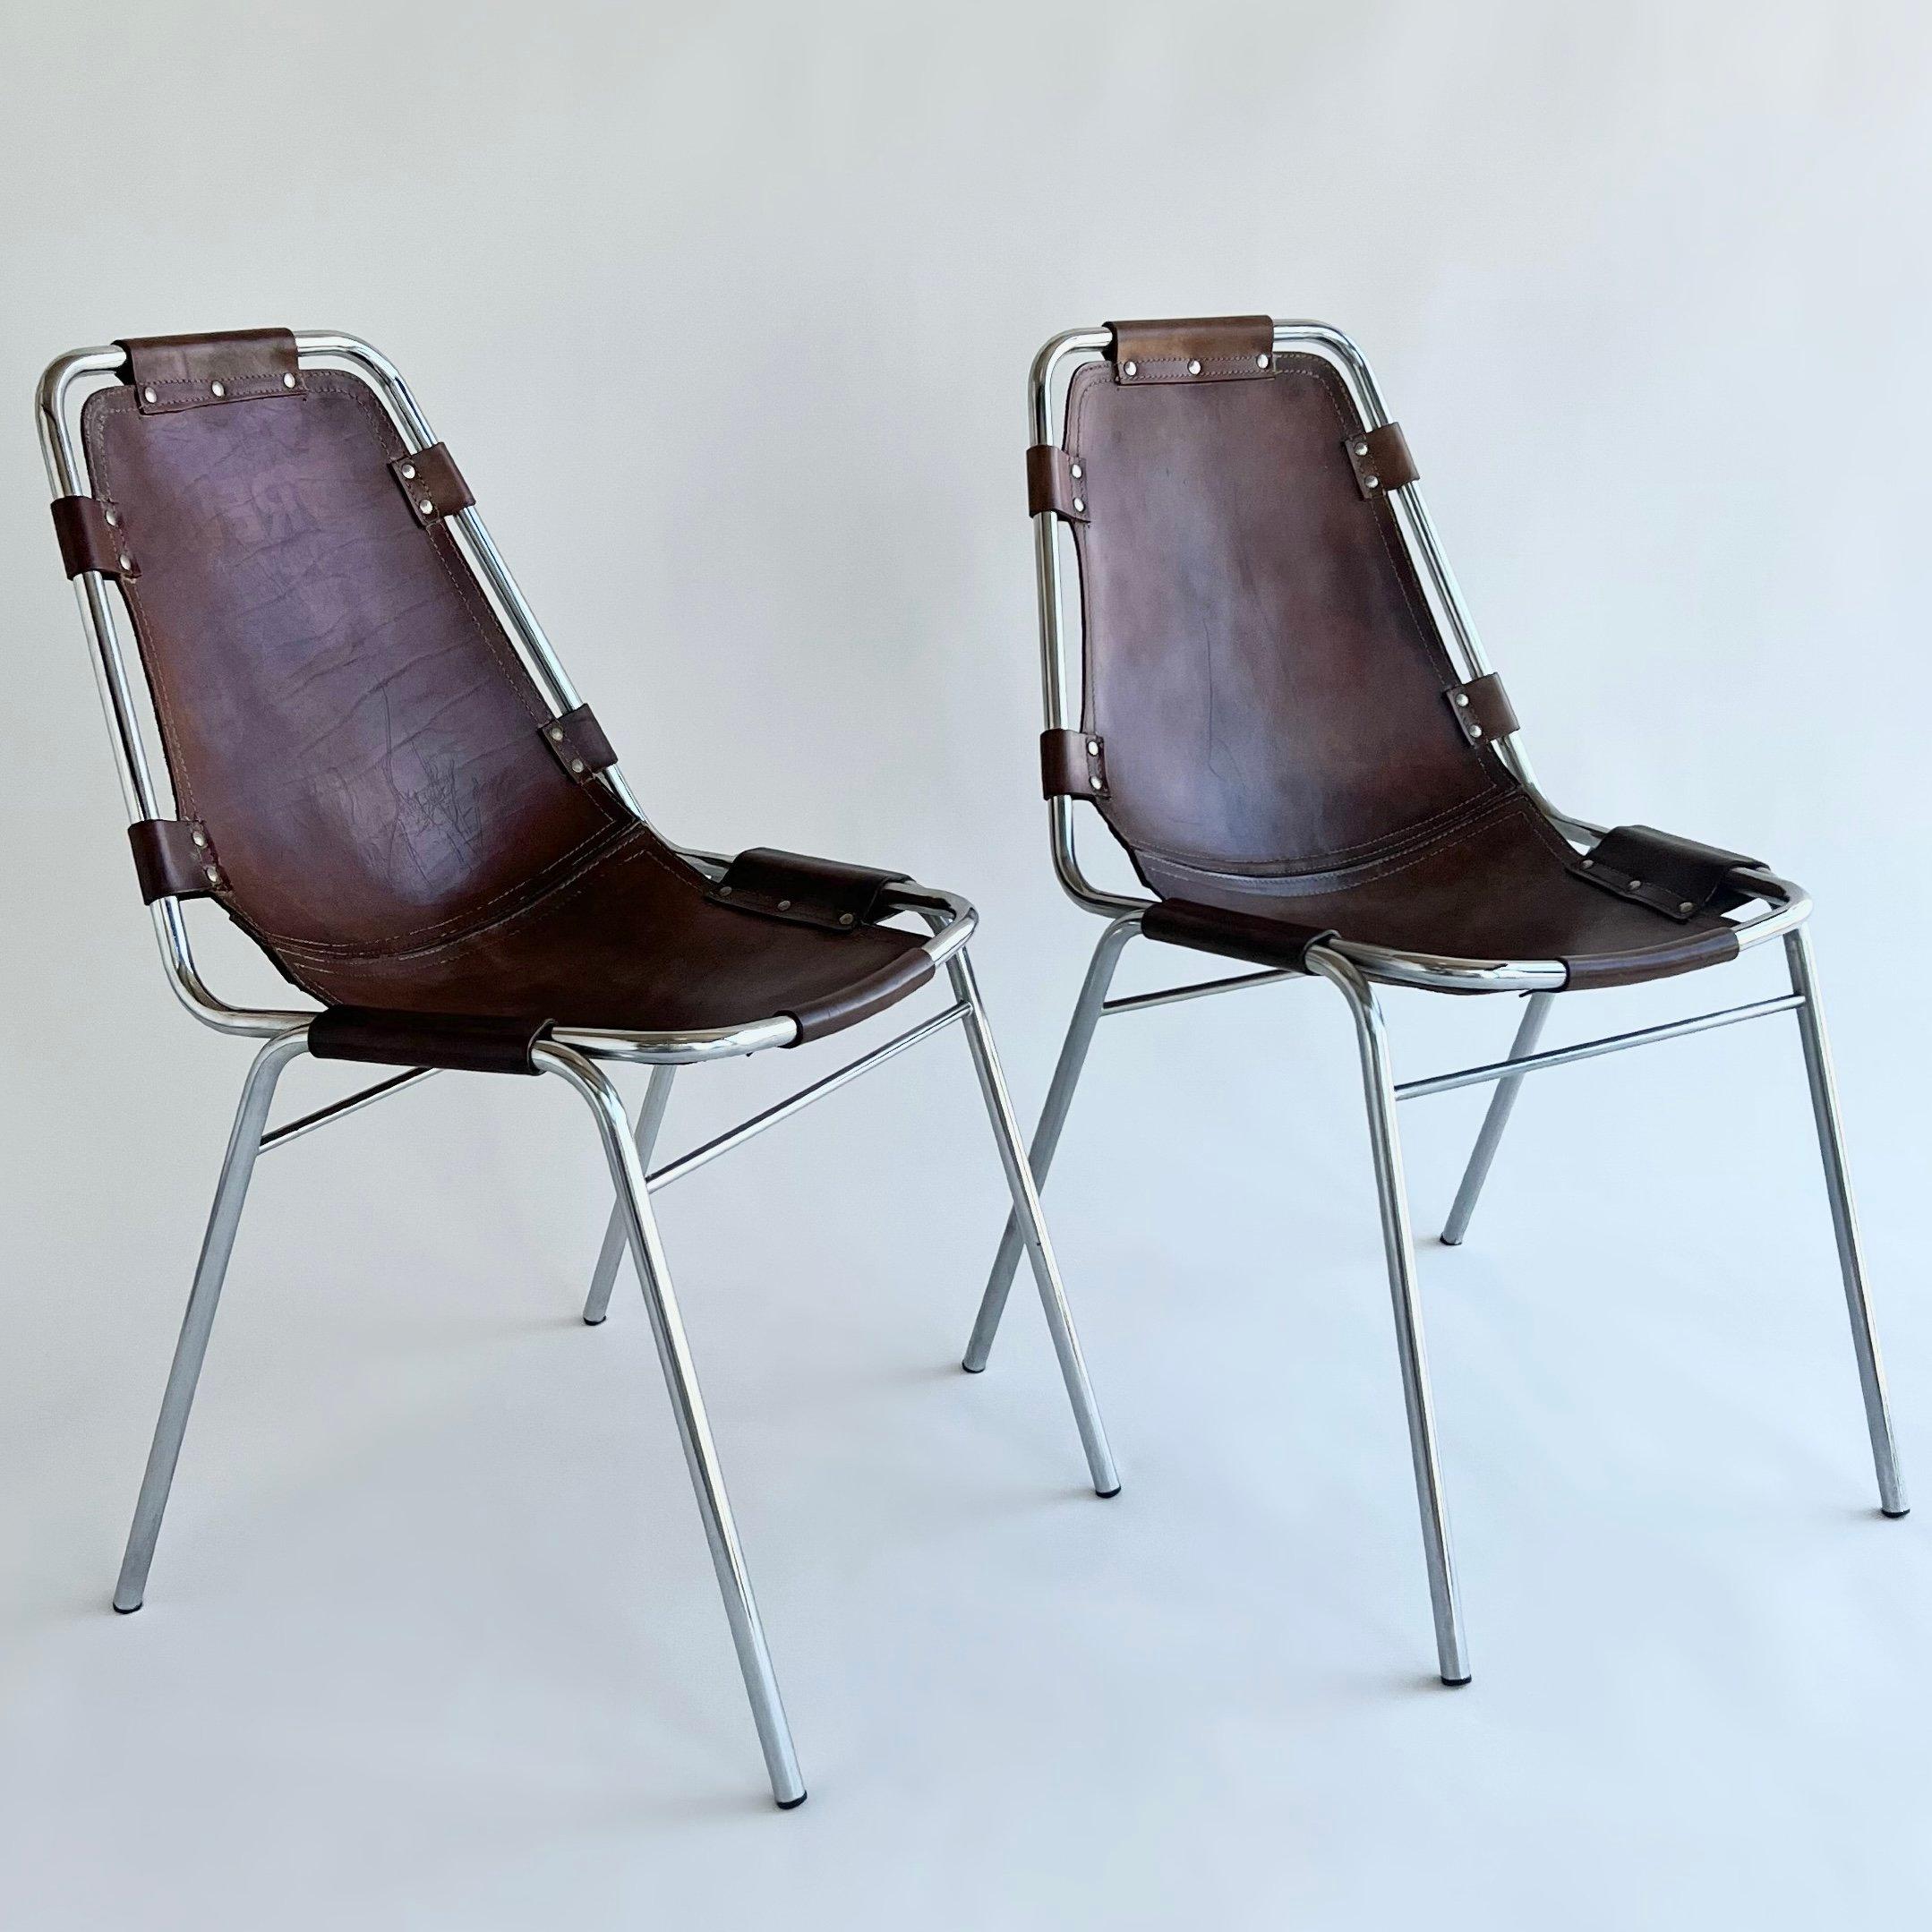 Ensemble de 10 chaises de salle à manger en chrome et cuir cognac sélectionnées par Charlotte Perriand pour la station de ski des Arcs. Fabriqué par DalVera, Italie. Circa 1960's